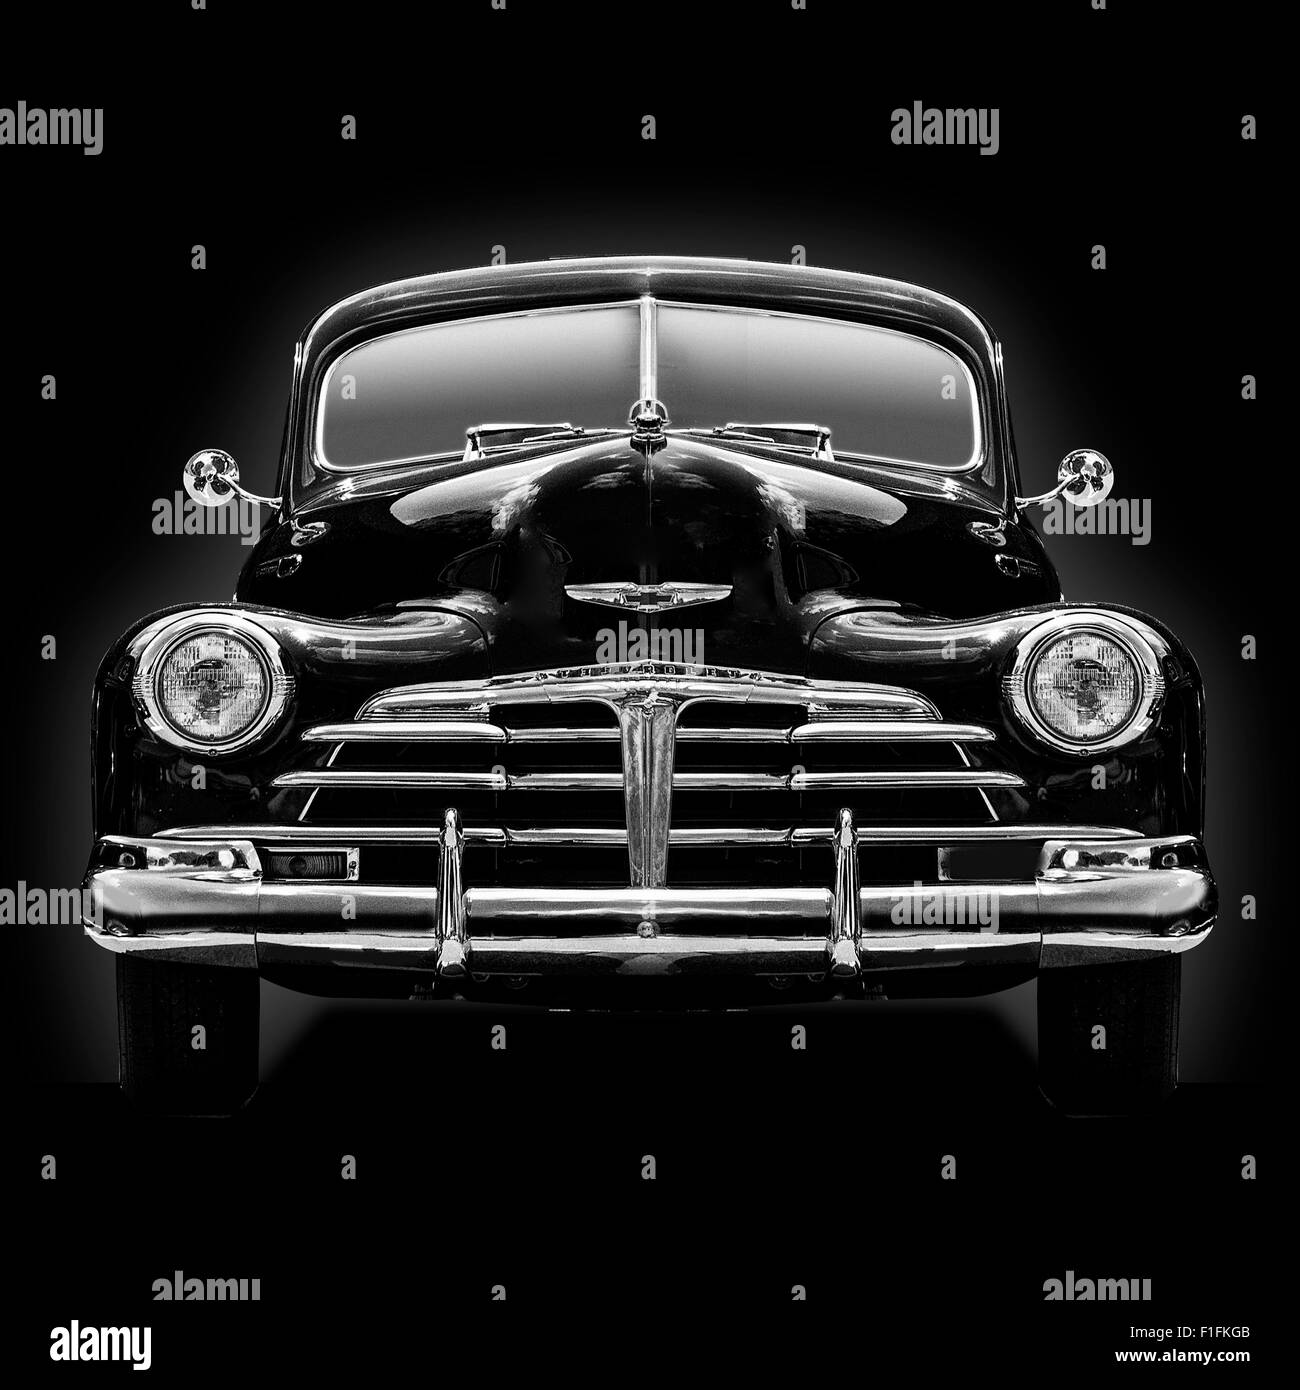 Ein b&w Kopf auf Blick auf ein 1950 Chevrolet Coupé auf einem schwarzen Hintergrund ein quadratisches Format Bild ausgeschlagen. Stockfoto